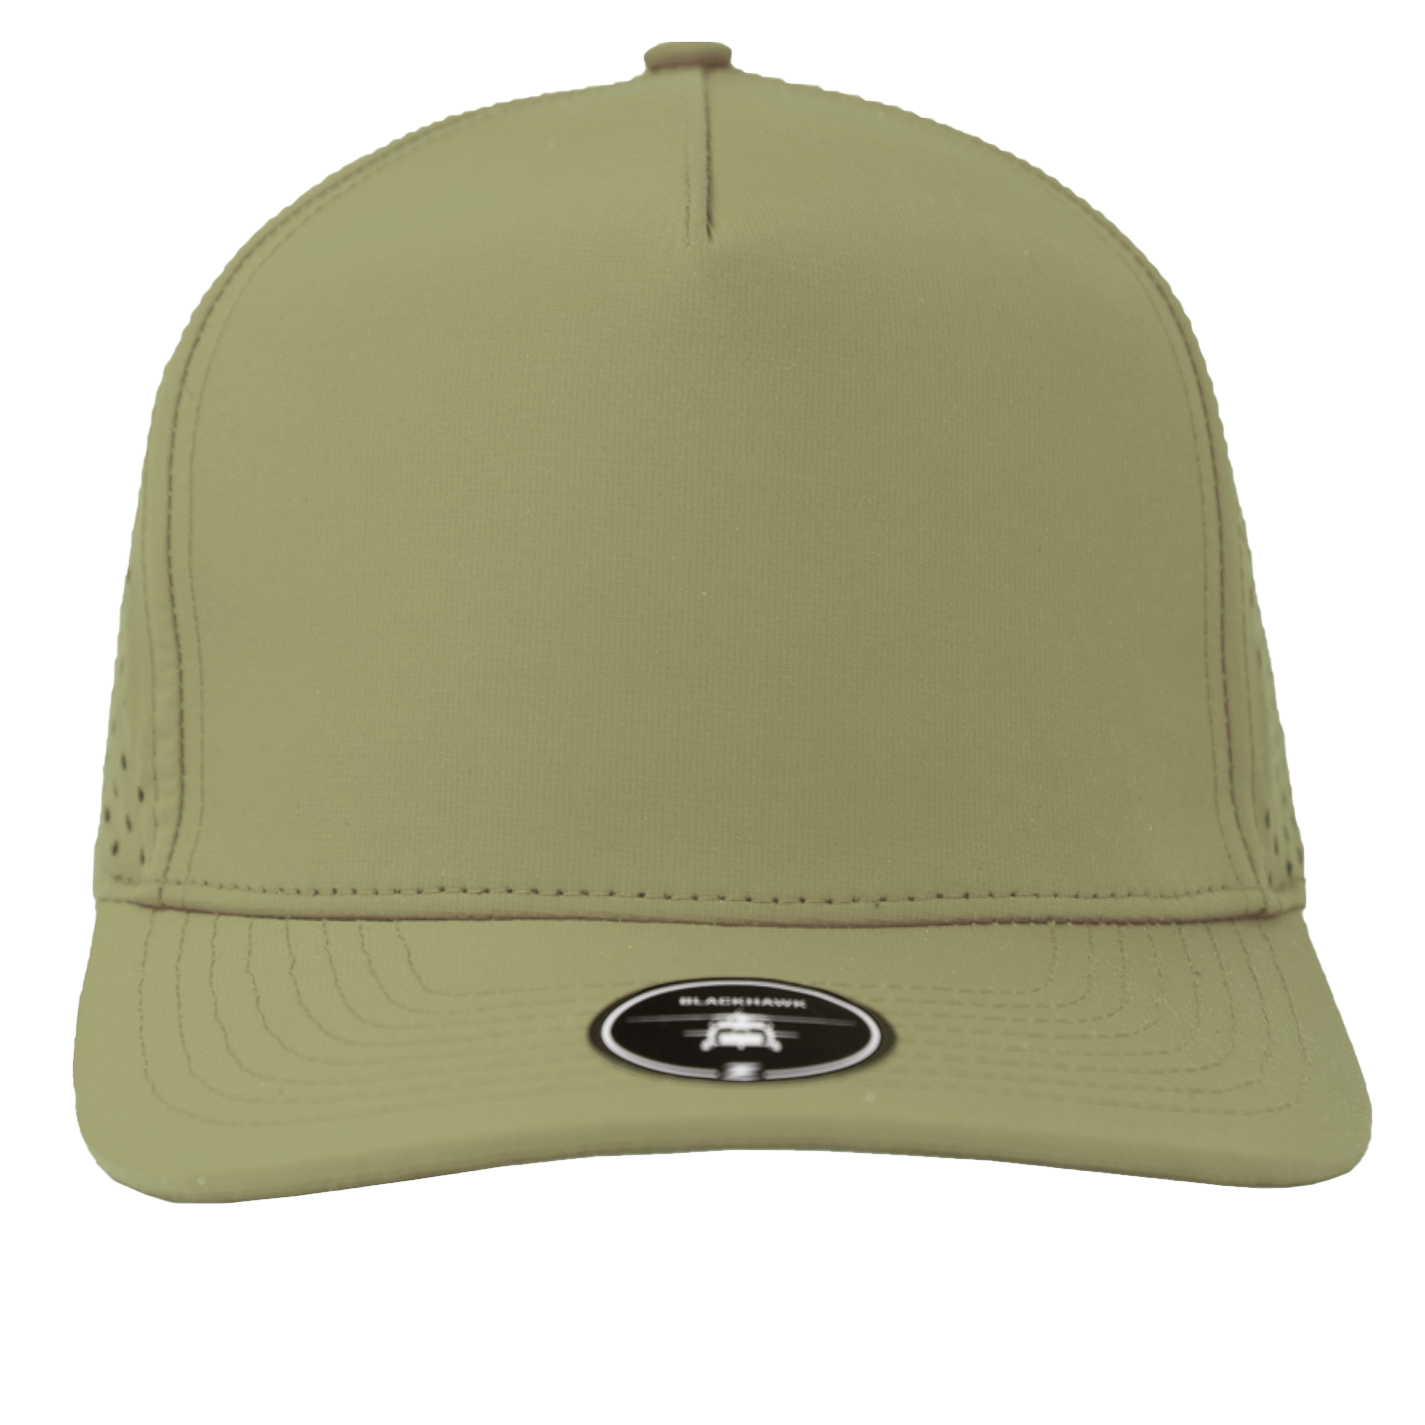 BLACKHAWK-Water Repellent hat-Zapped Headwear-loden-olive-drab-Zapped Headwear